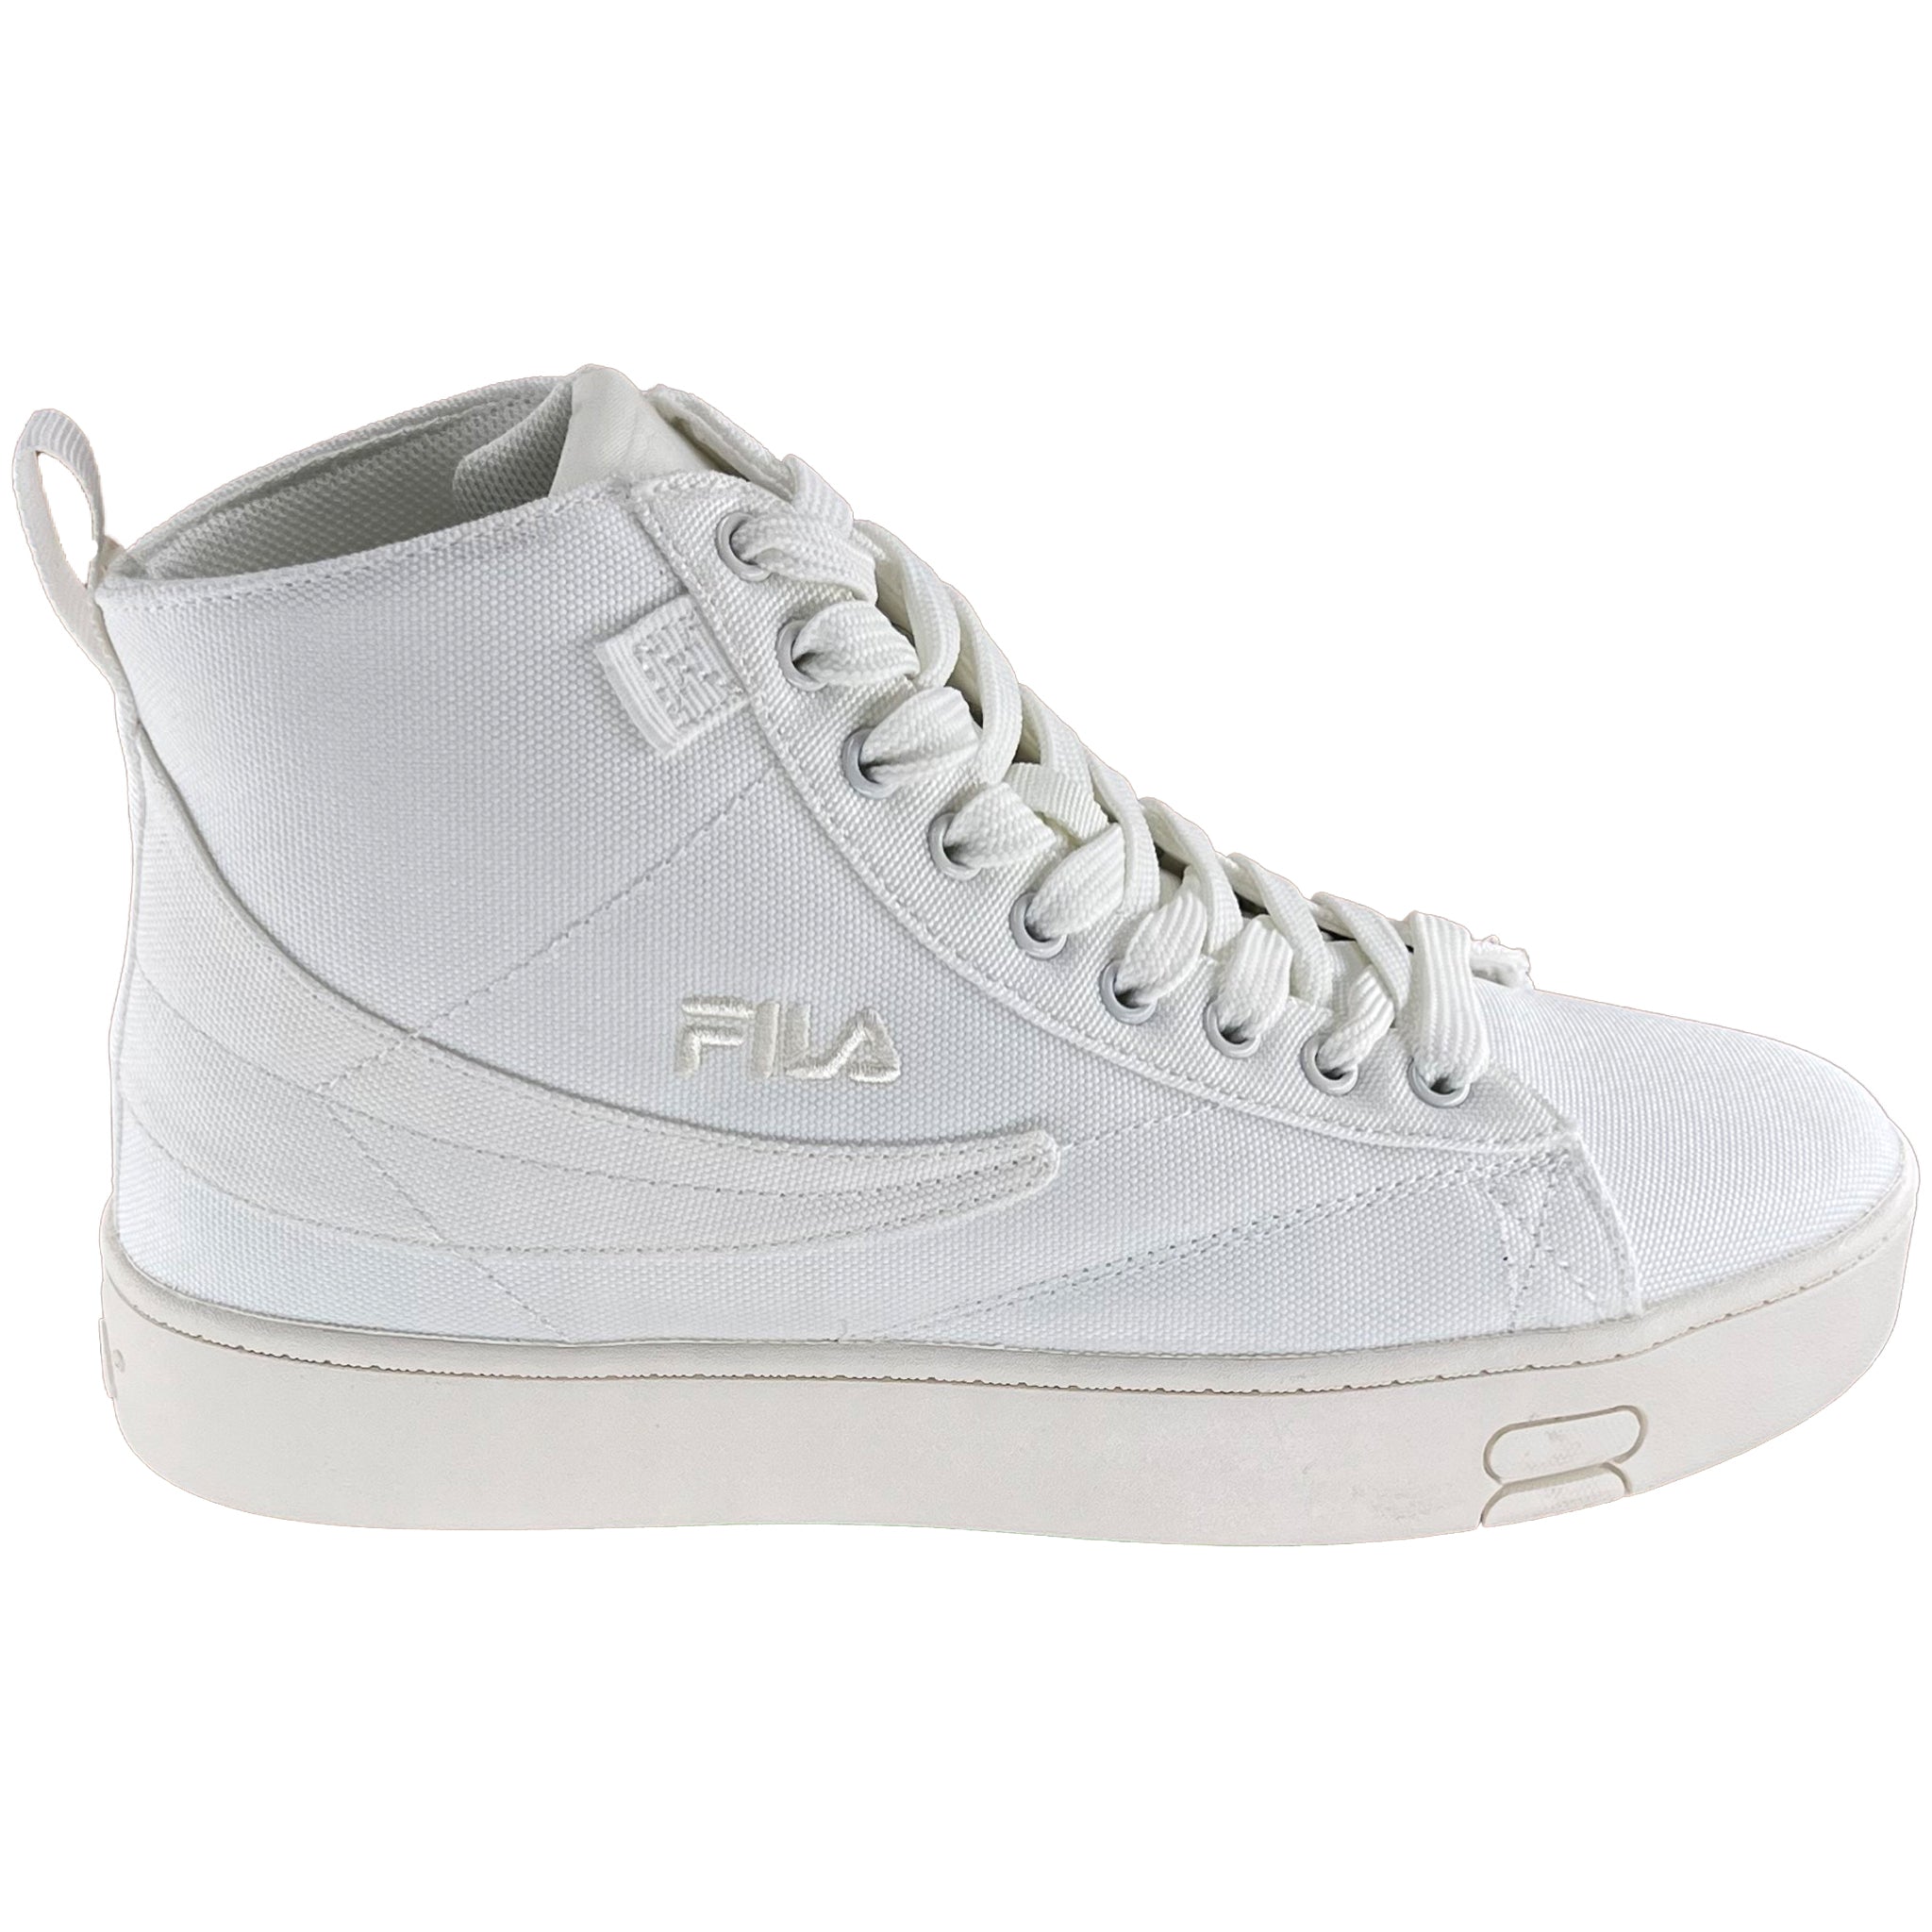 Buy Fila Women White Disruptor Ii Exp Sneakers online